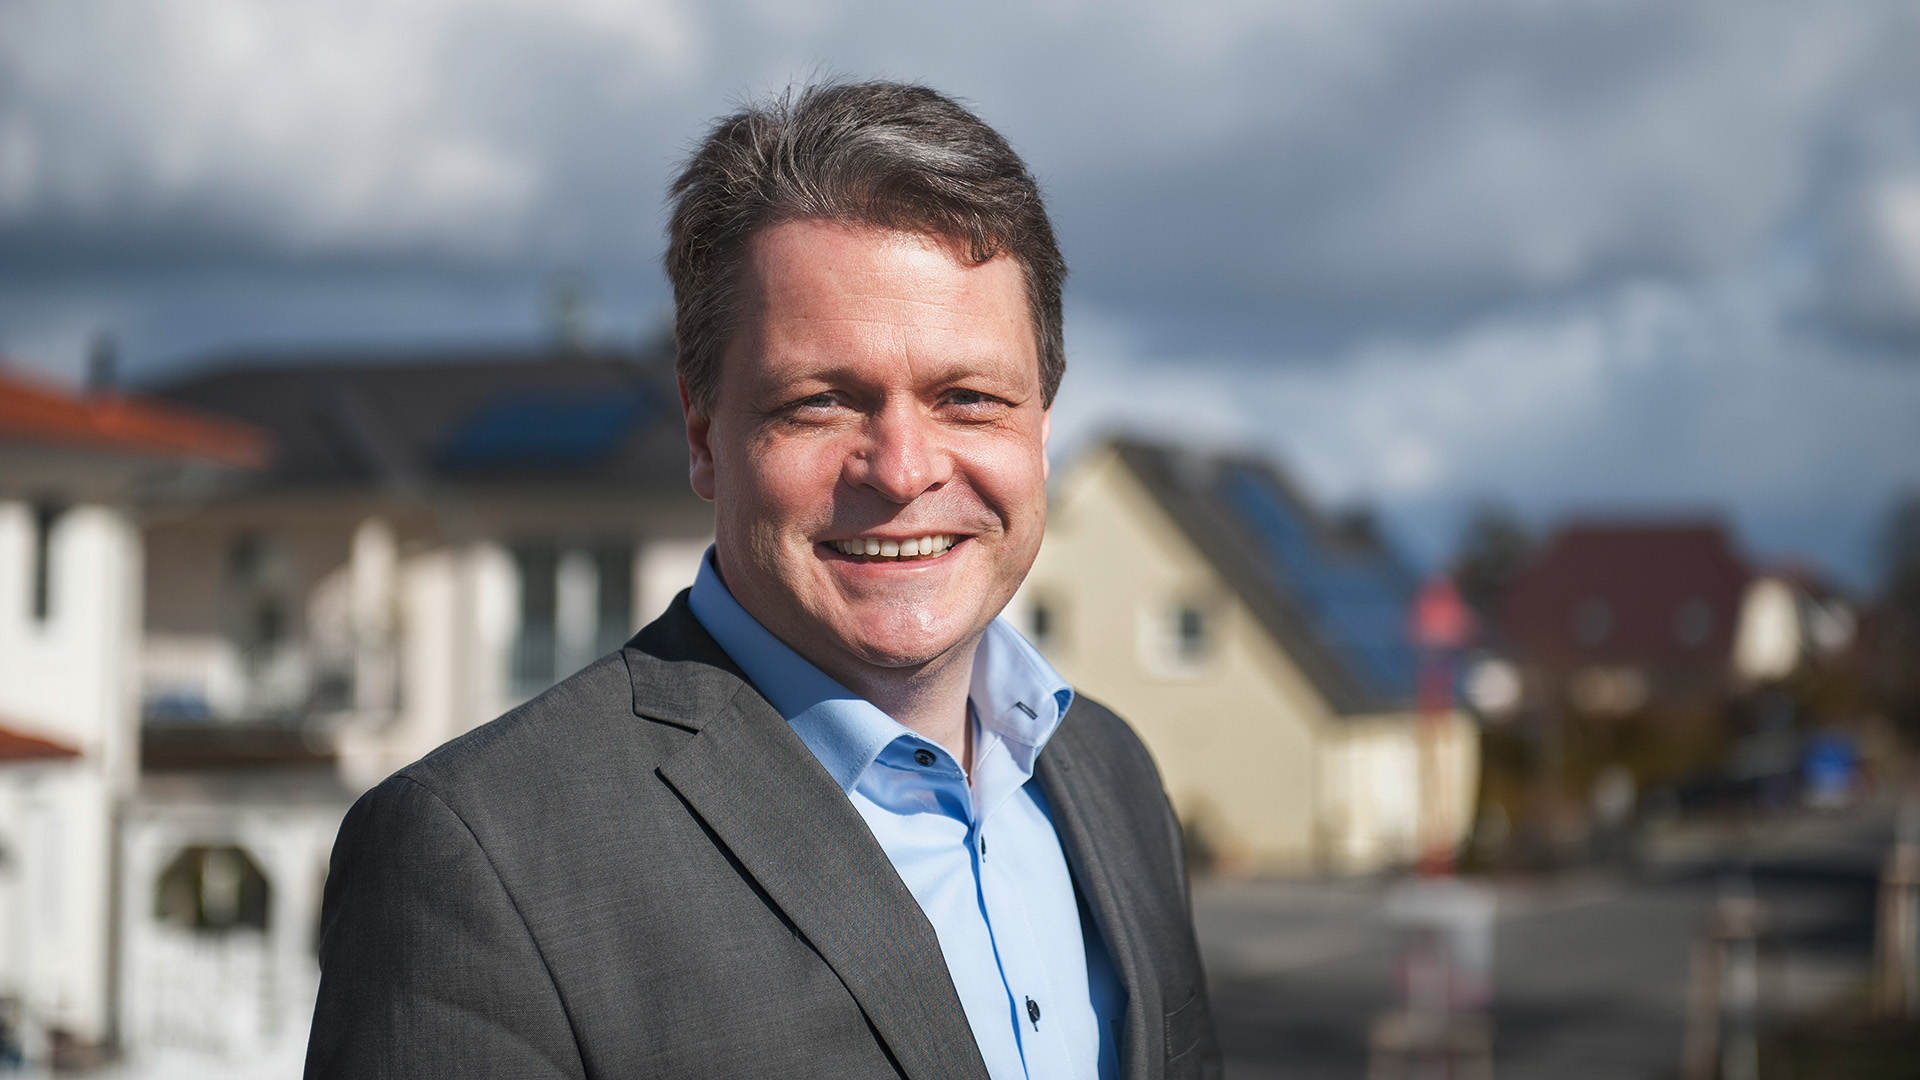 Bernd Albers bleibt Bürgermeister in Stahnsdorf. (Quelle: I. Gloeckner)